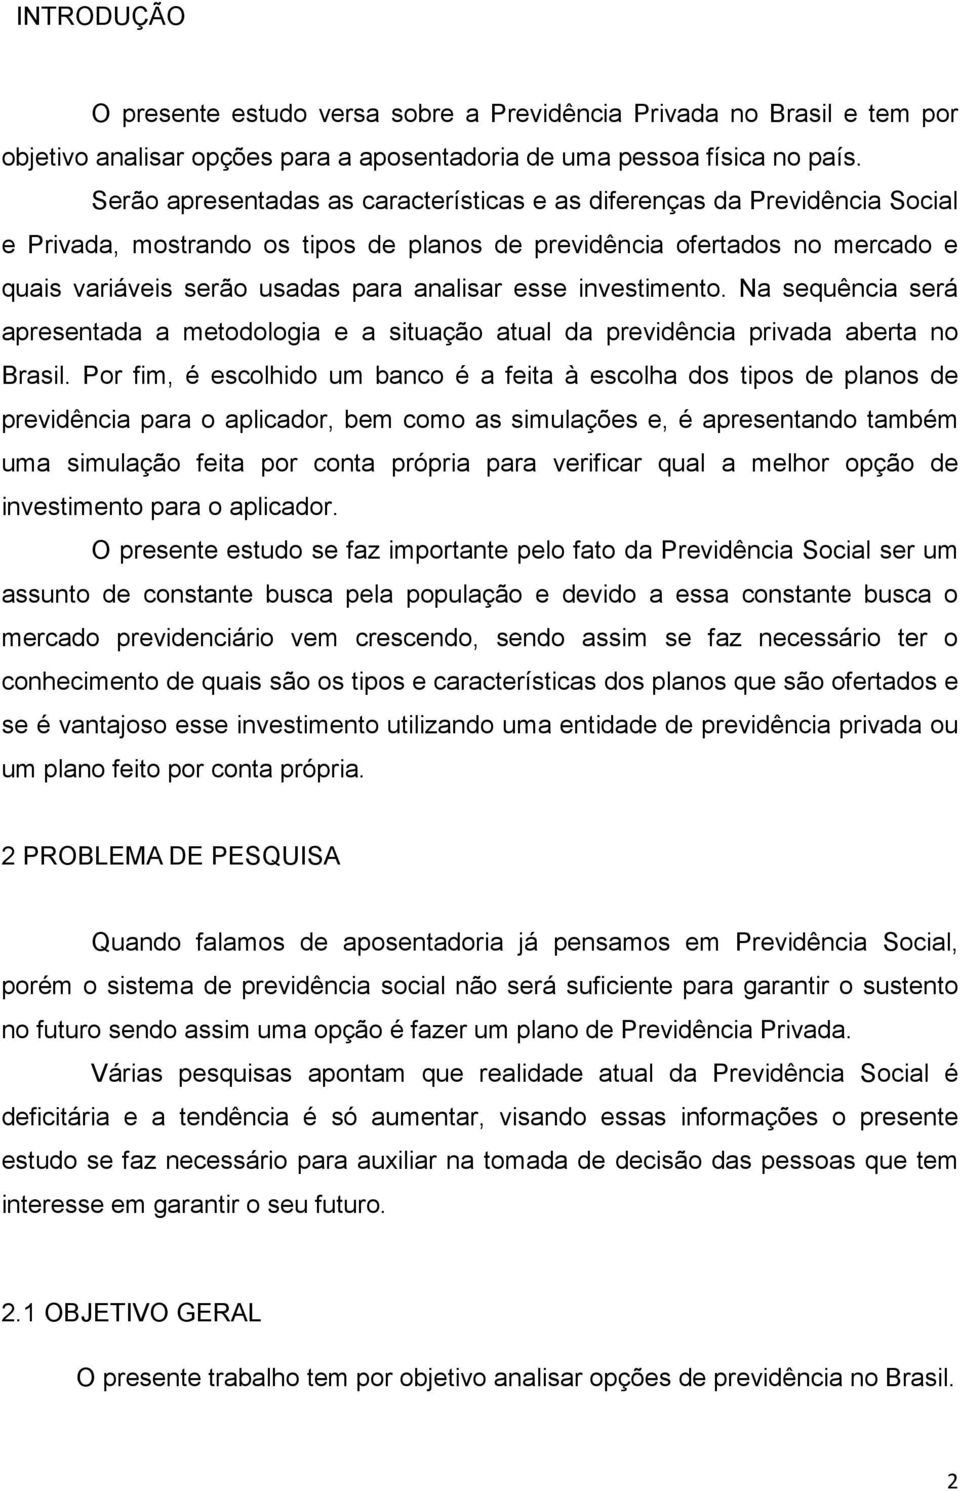 esse investimento. Na sequência será apresentada a metodologia e a situação atual da previdência privada aberta no Brasil.